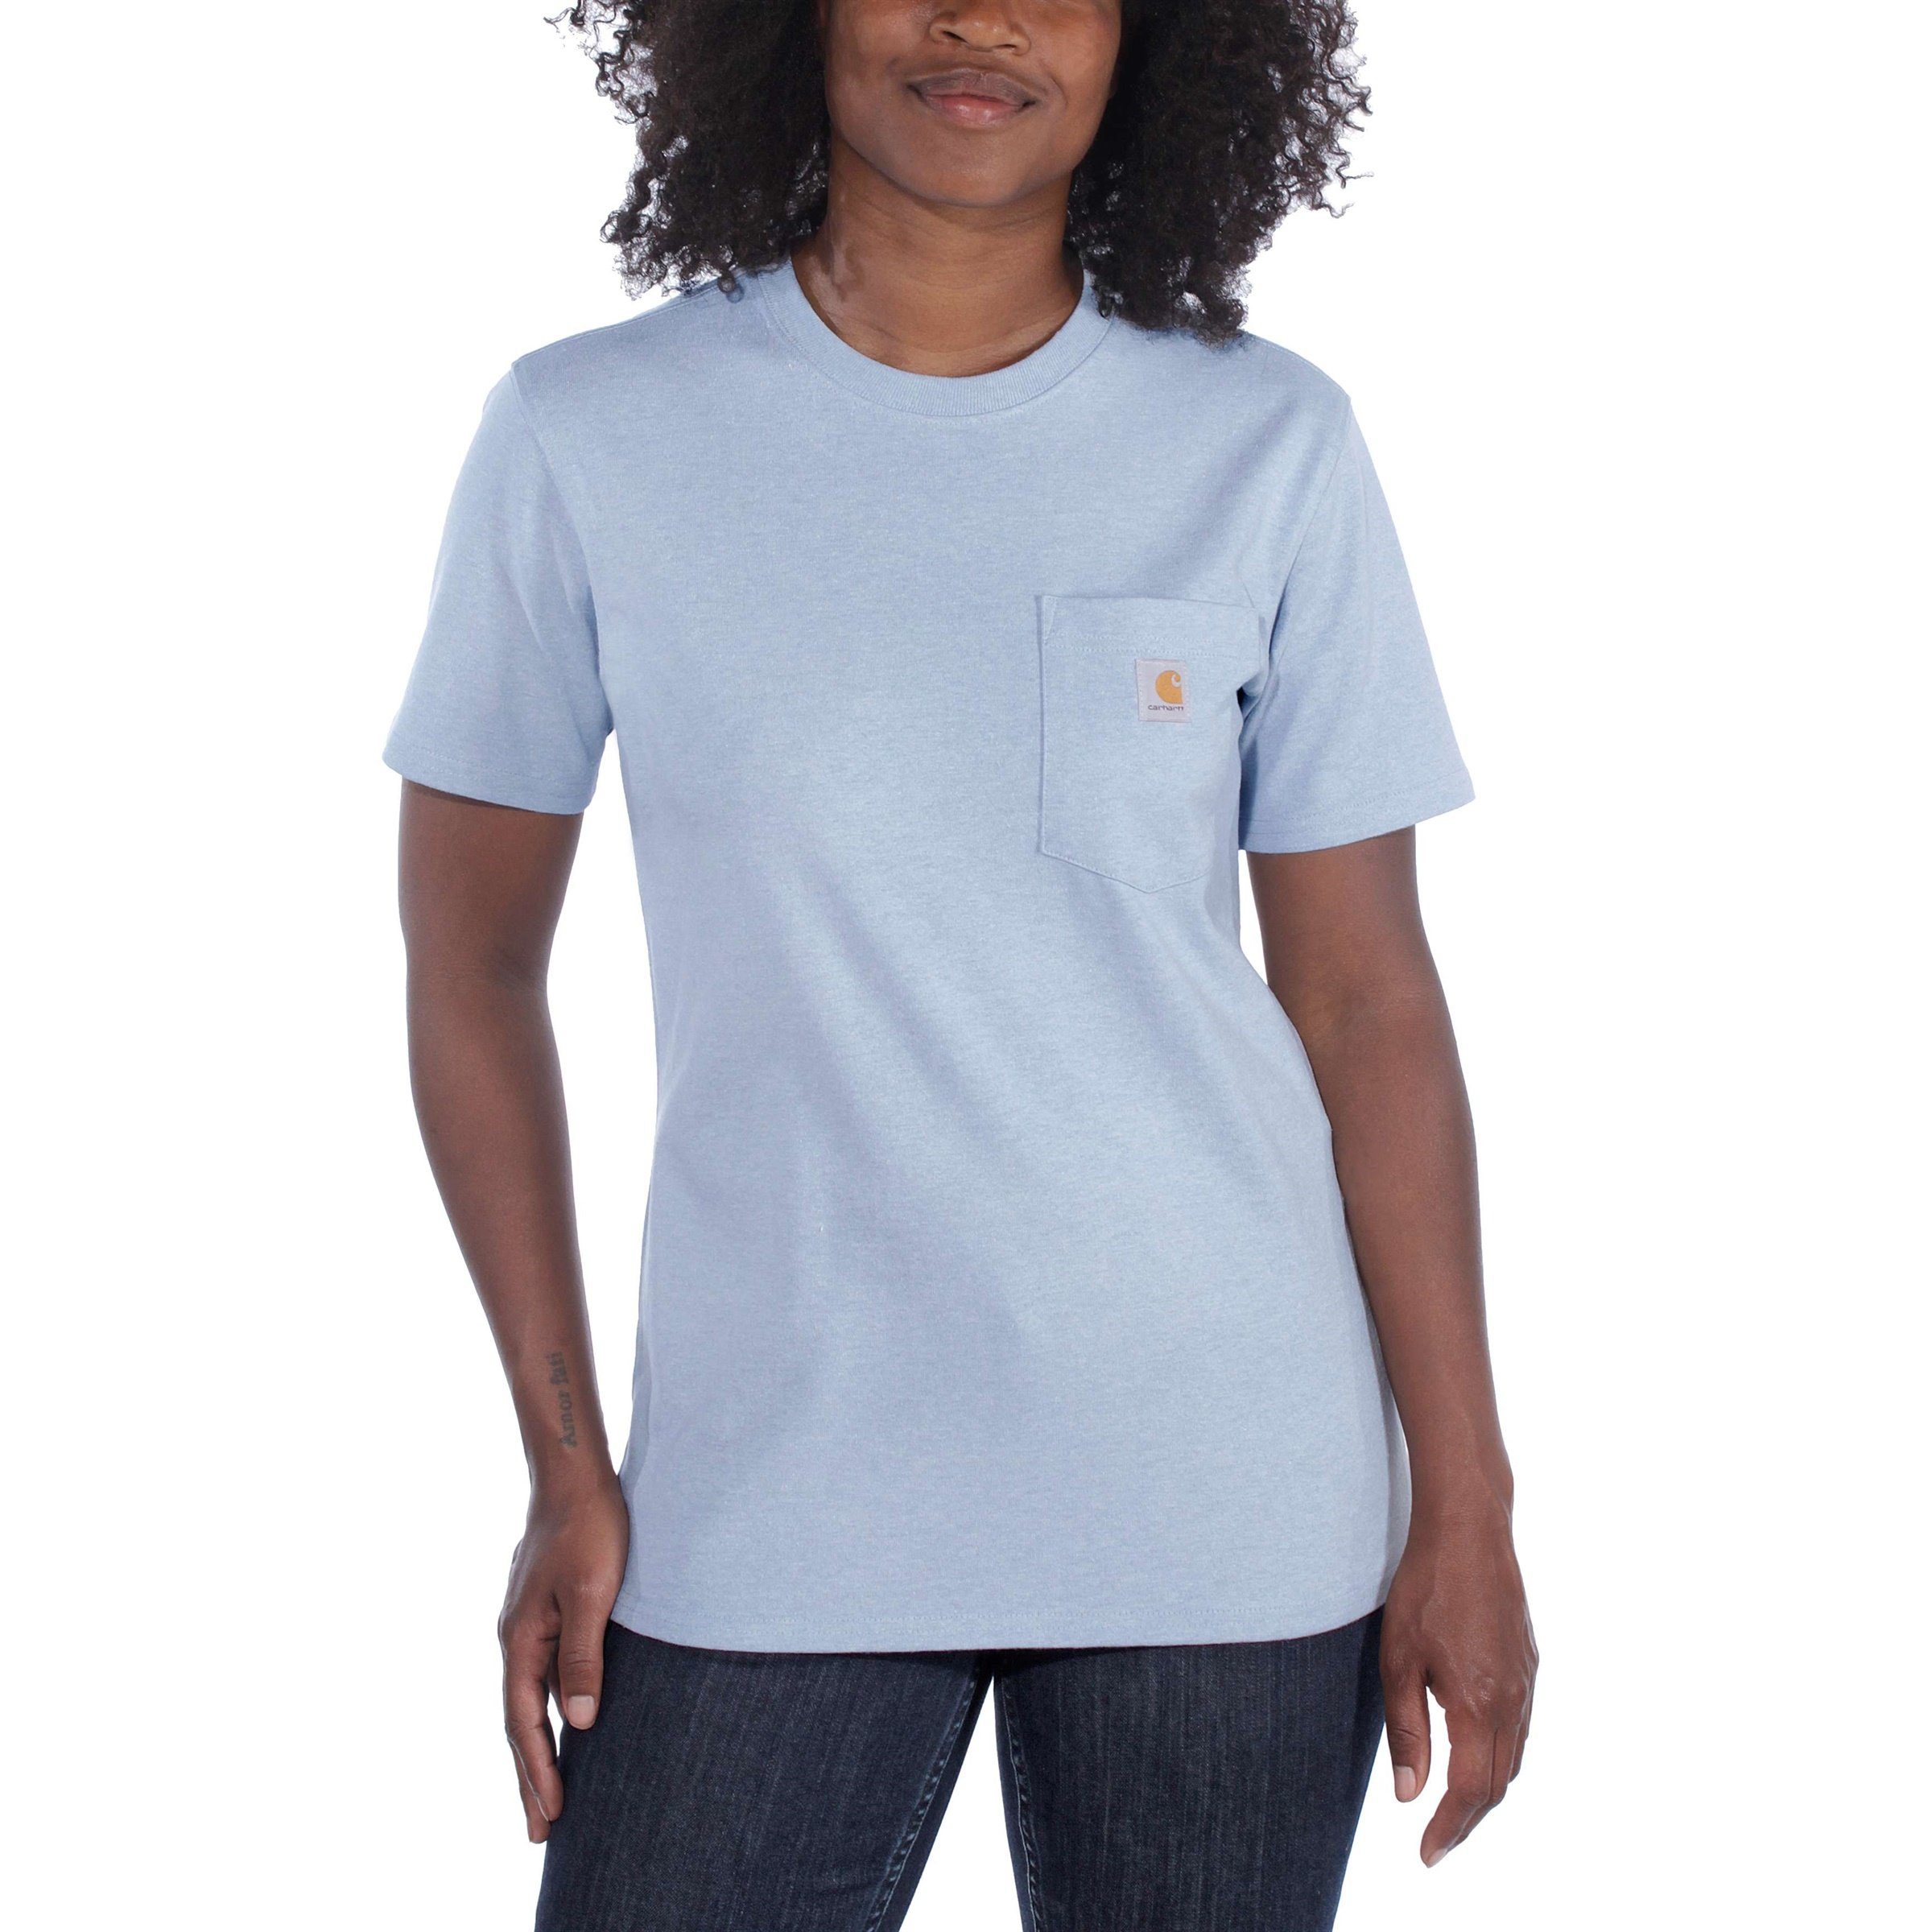 Carhartt T-Shirt Adult grey heather Damen Fit Carhartt Loose T-Shirt Short-Sleeve Pocket Heavyweight